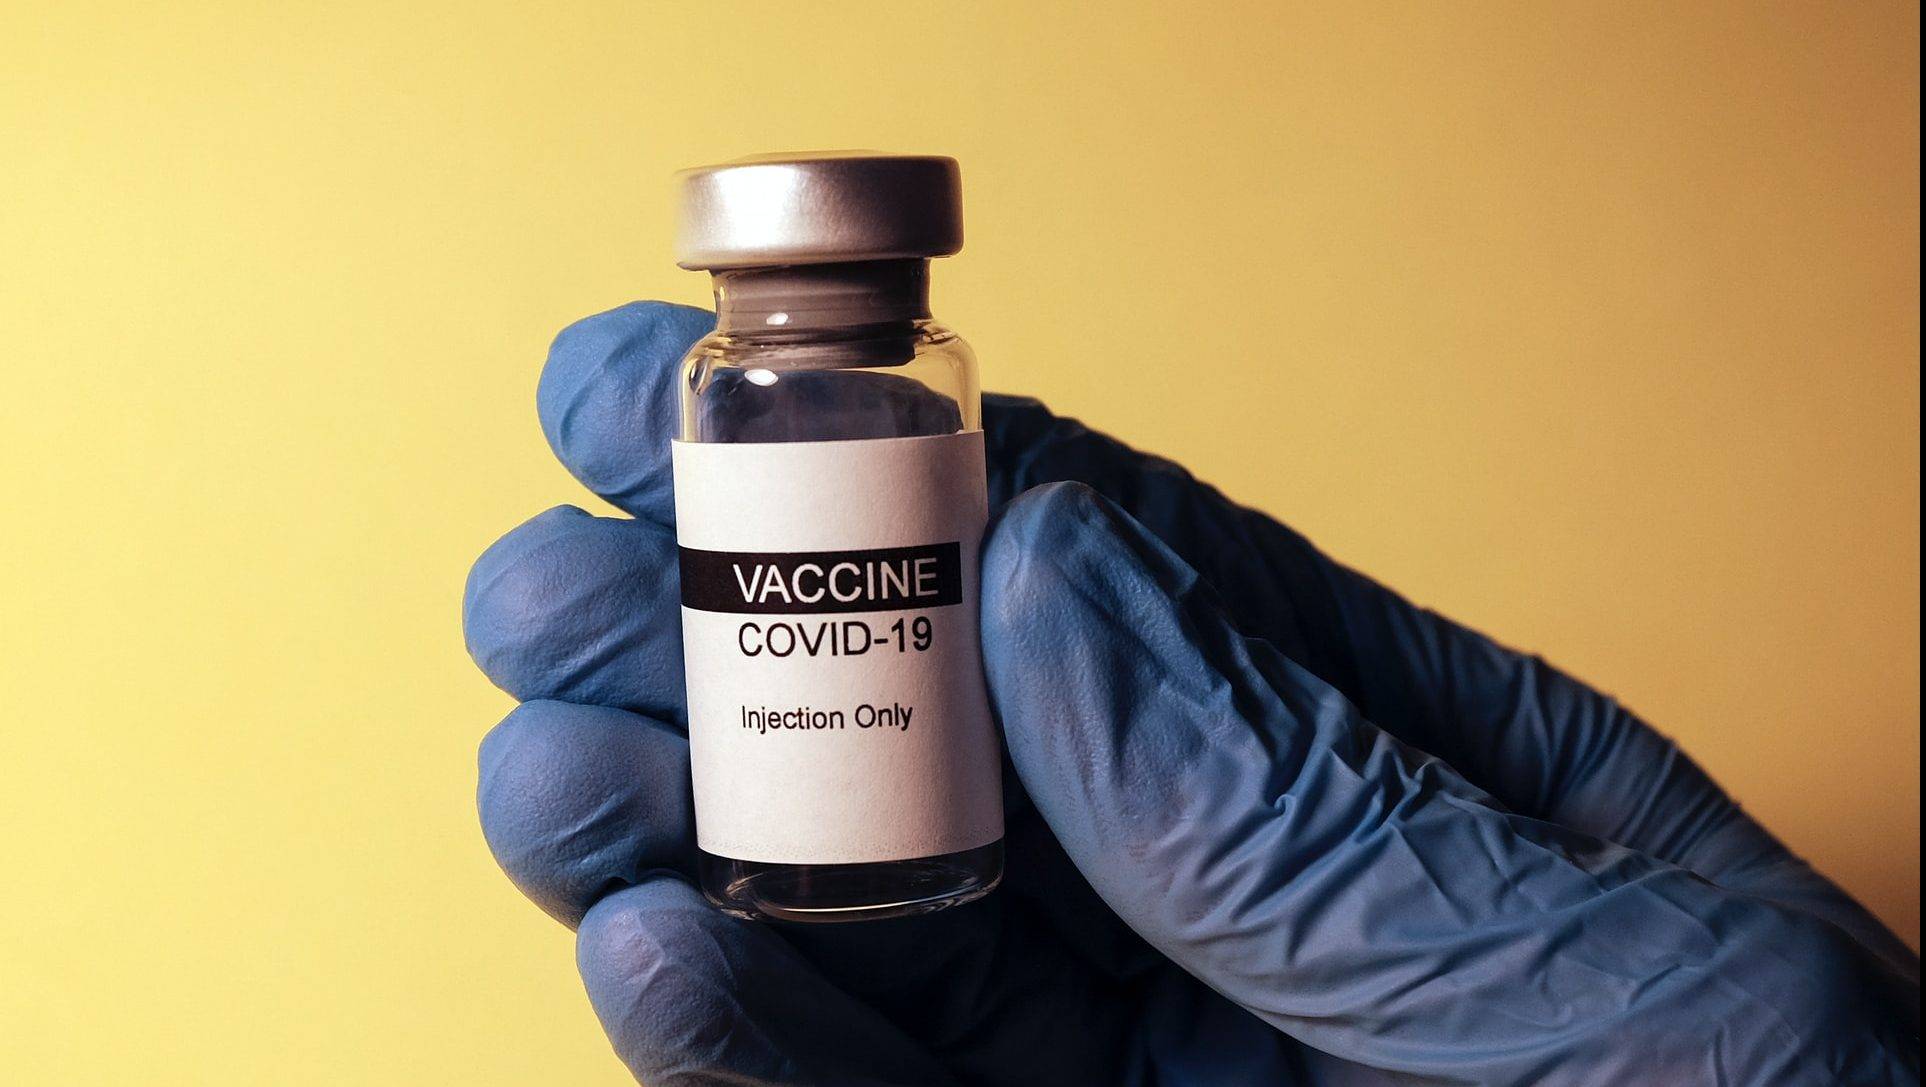 Catat! Yang Boleh dan Tak Boleh Dilakukan Setelah Vaksin Covid-19